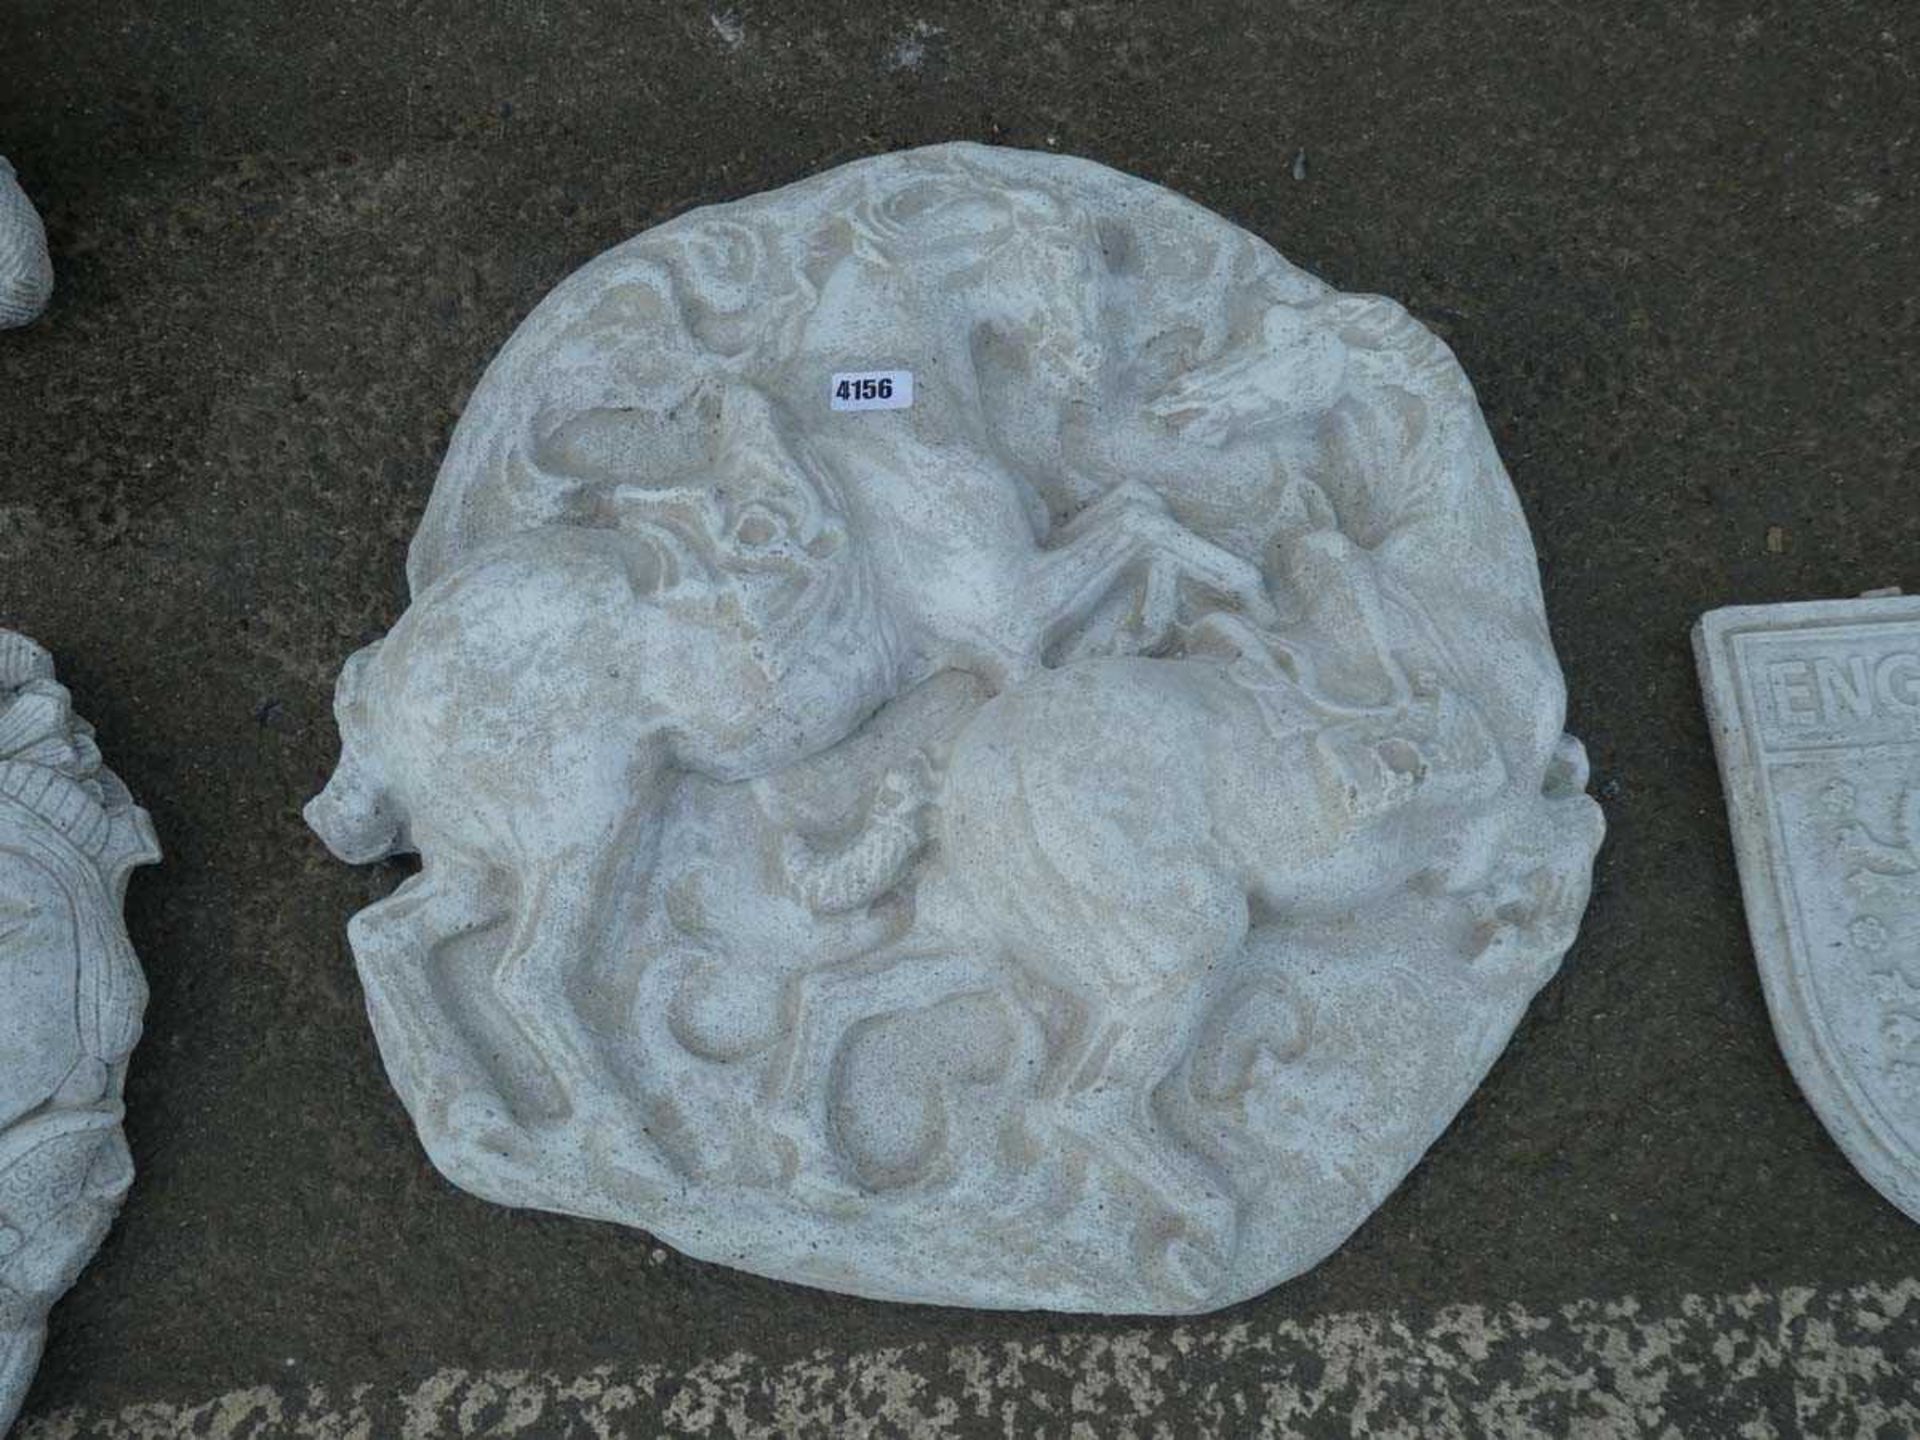 Circular rearing horse concrete plaque